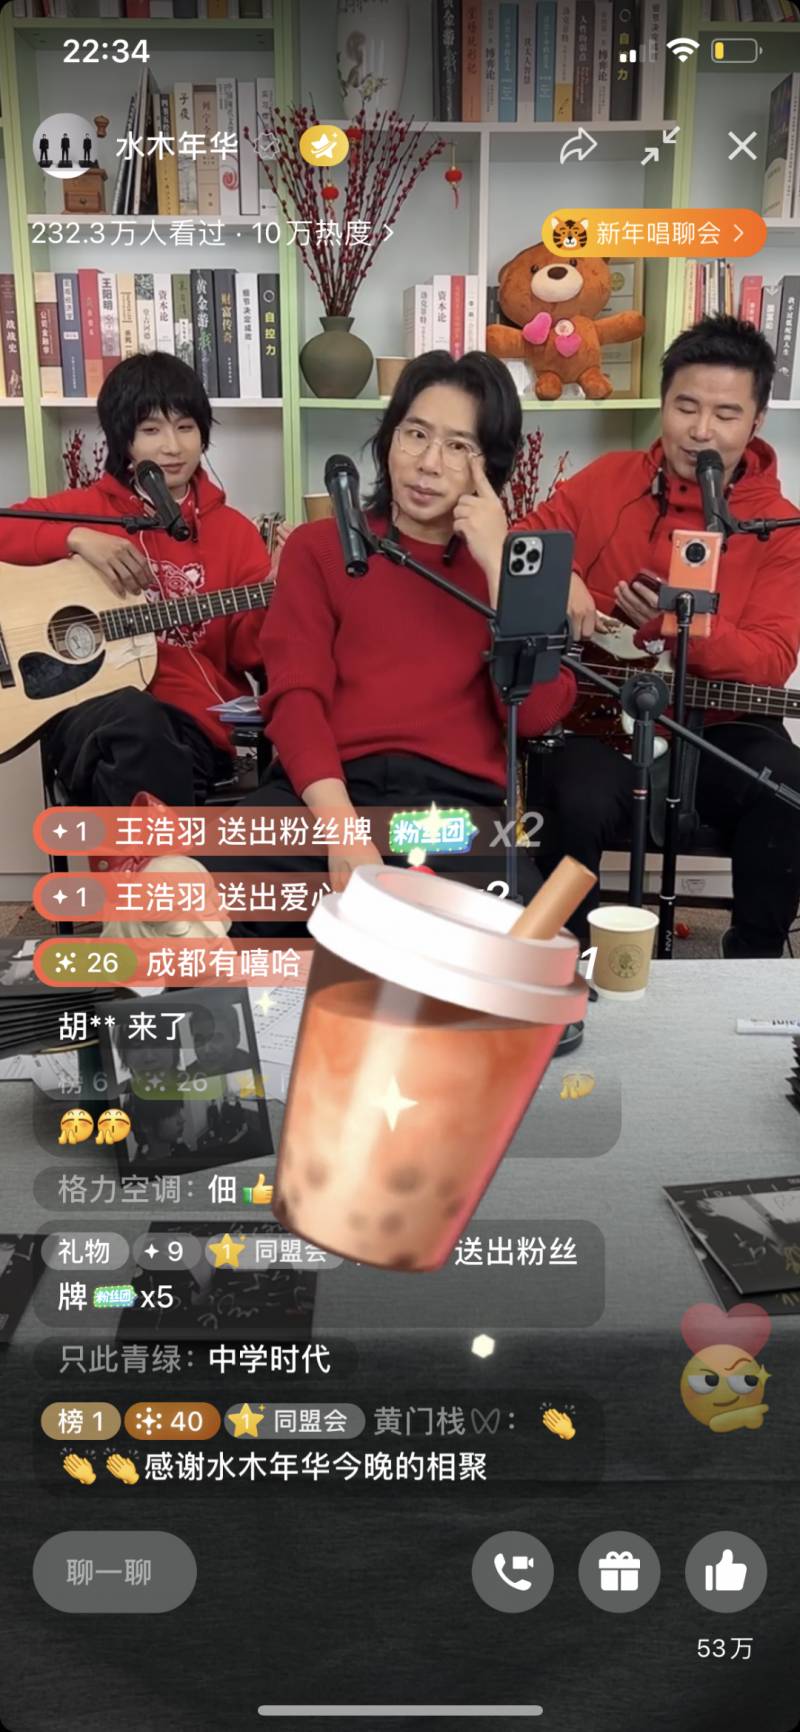 音悅Tai五月天飯團微博眡頻，專屬音樂互動盛況